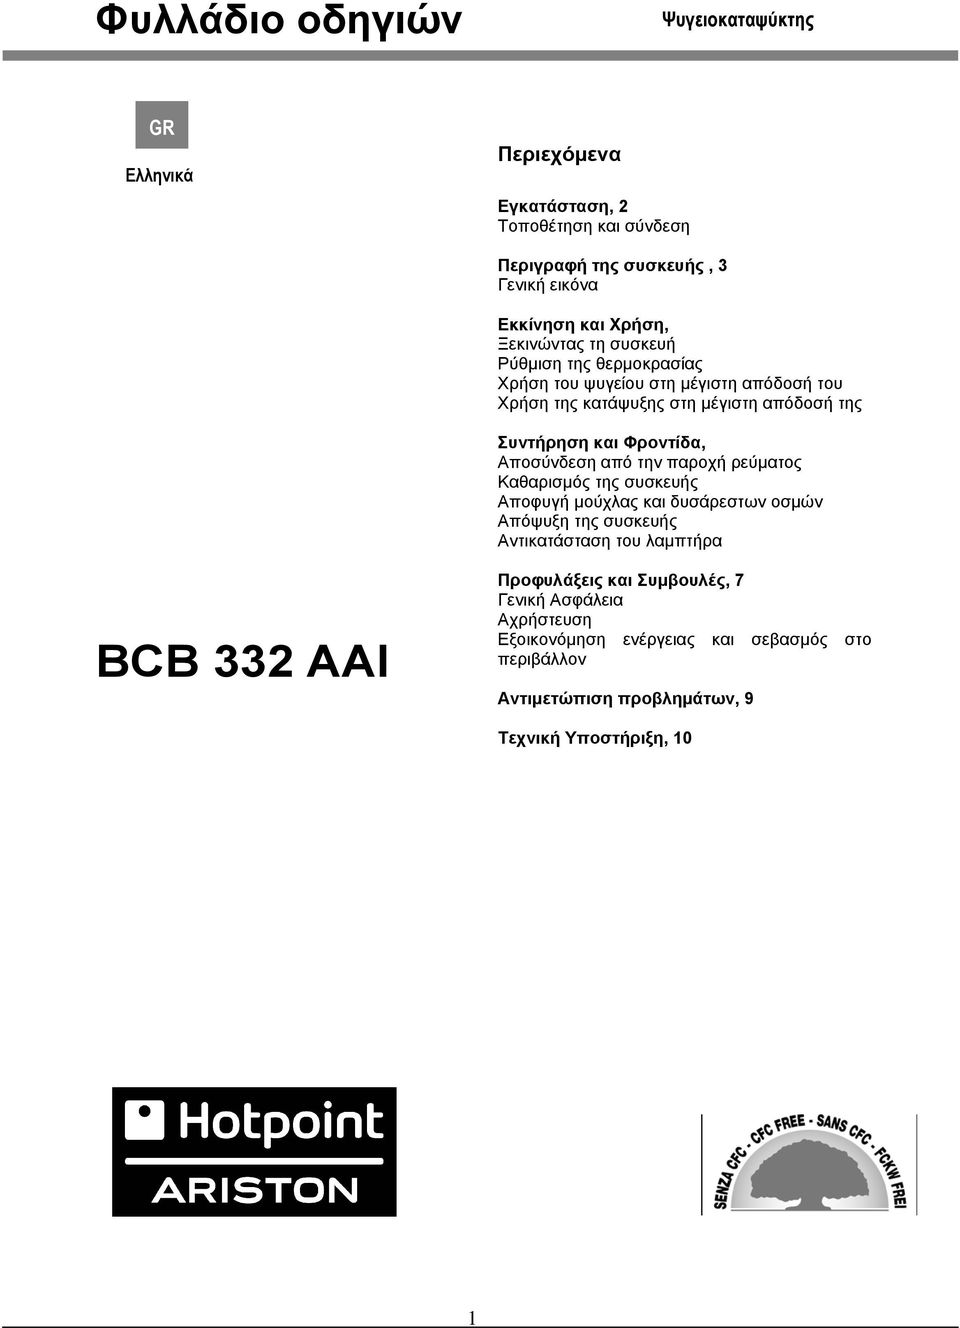 Αποσύνδεση από την παροχή ρεύματος Καθαρισμός της συσκευής Αποφυγή μούχλας και δυσάρεστων οσμών Απόψυξη της συσκευής Αντικατάσταση του λαμπτήρα BCB 332 AAI